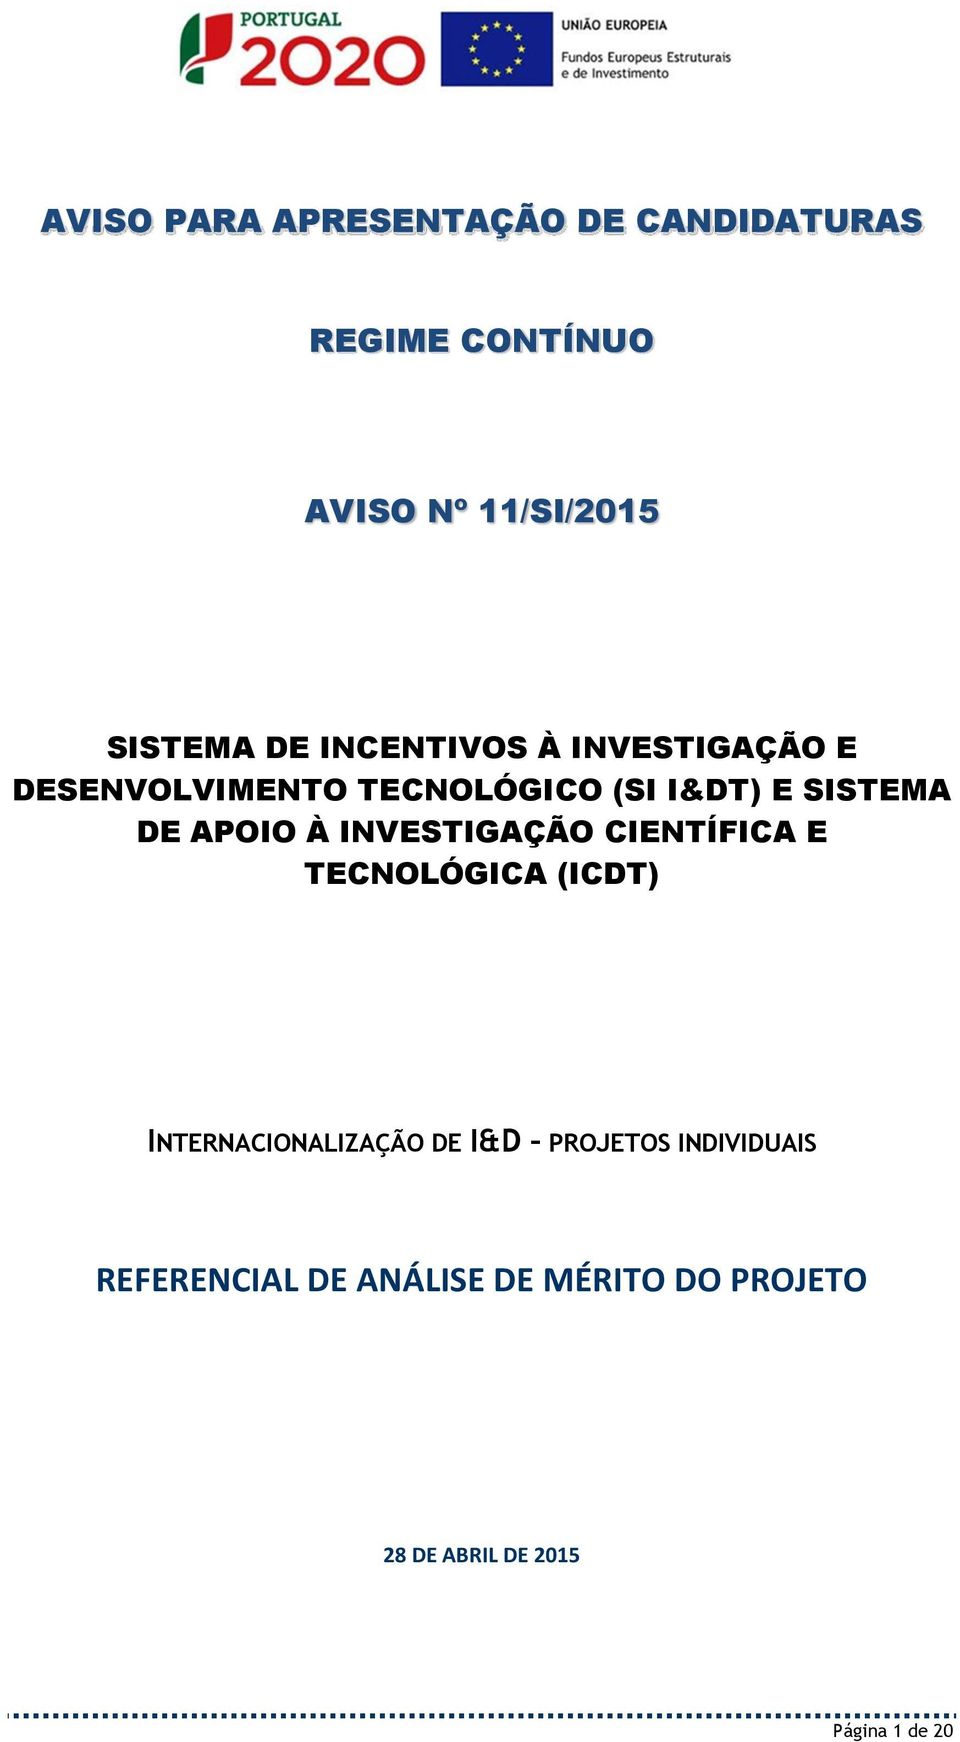 INVESTIGAÇÃO CIENTÍFICA E TECNOLÓGICA (ICDT) INTERNACIONALIZAÇÃO DE I&D PROJETOS